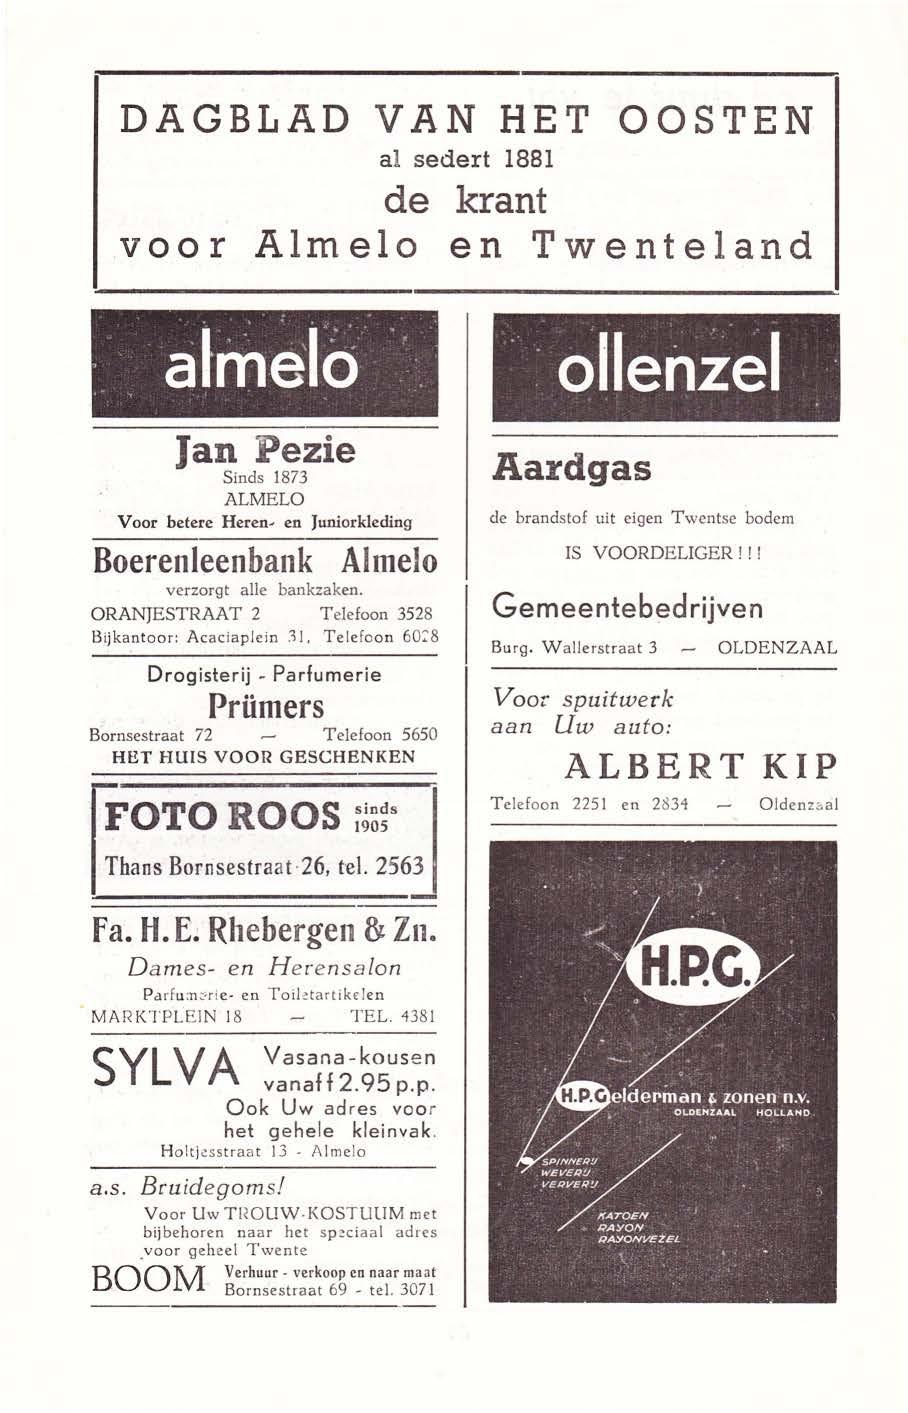 DAGBLAD VAN HET OOSTEN al sedert 1881 de krant voor Almelo en Twenteland, atmelö. Jan Pezie Sinds 1873 ALMELO Voor hetere Heren- en Juniorkleding Boerenleenbank Almelo verzorgt alle bankzaken.